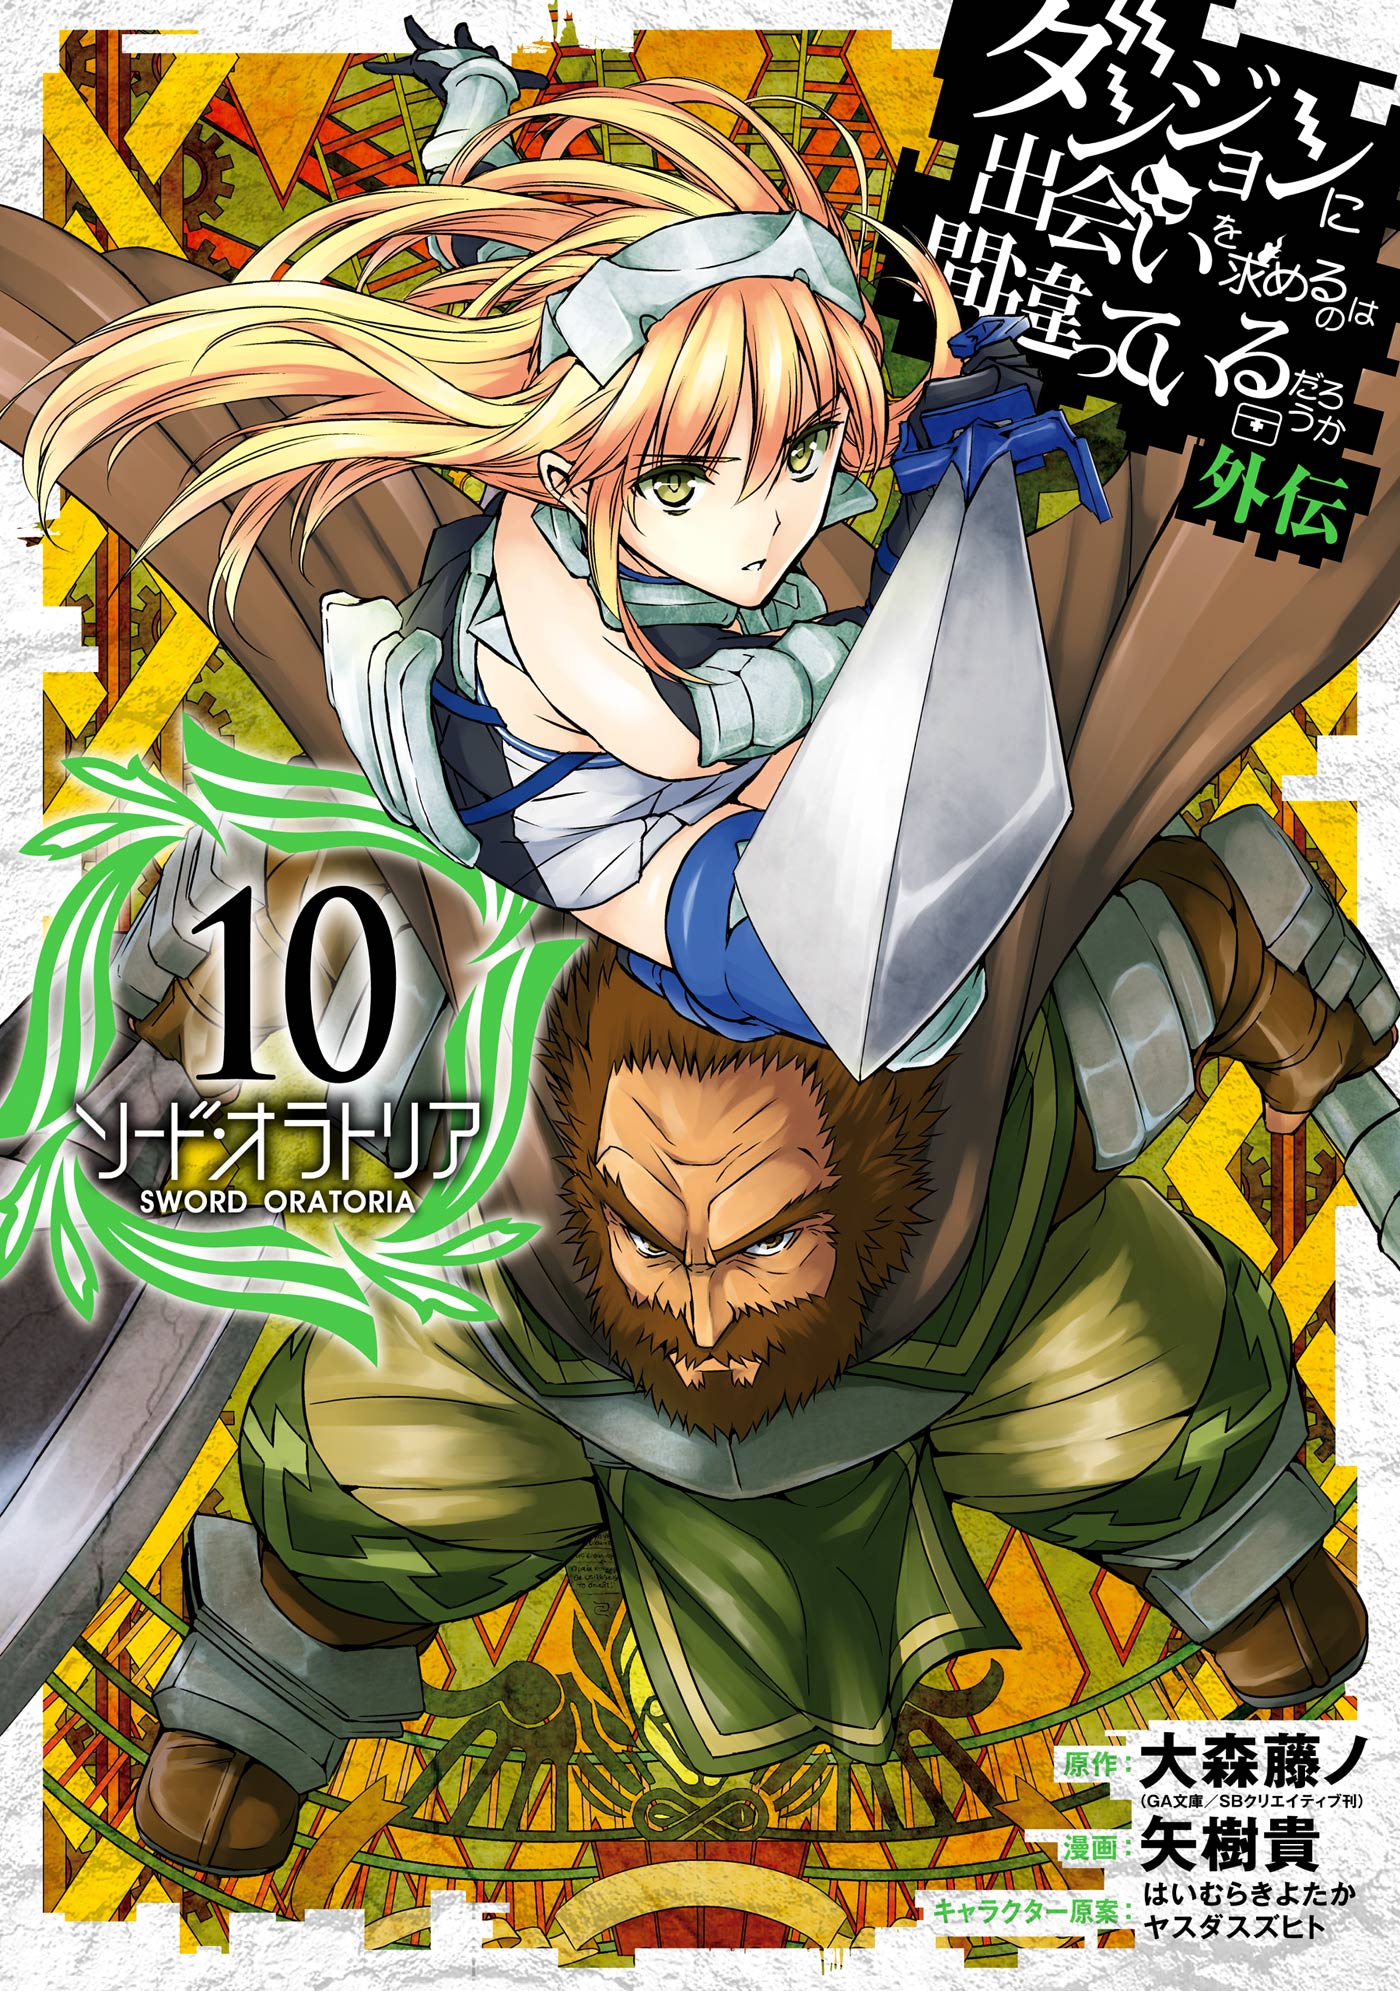 Sword Art Online Light Novel Volume 10